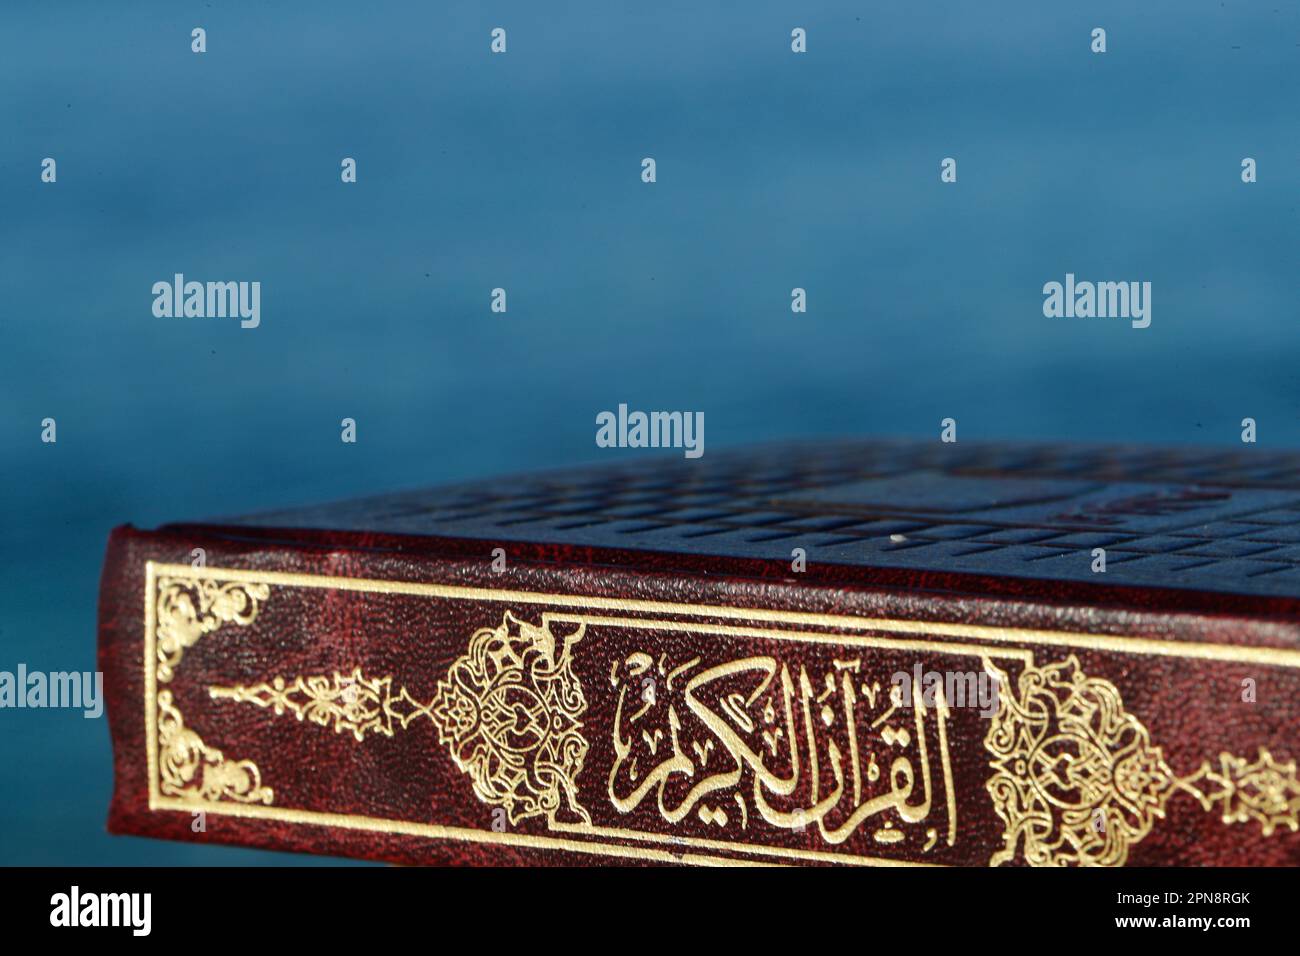 Das Cover des Heiligen Korans (Koran) mit den 99 Namen Allahs in arabischer Kalligraphie. Religiöser Text. Koran, Koran, Koran, Heiliger Koran, Koran r Stockfoto